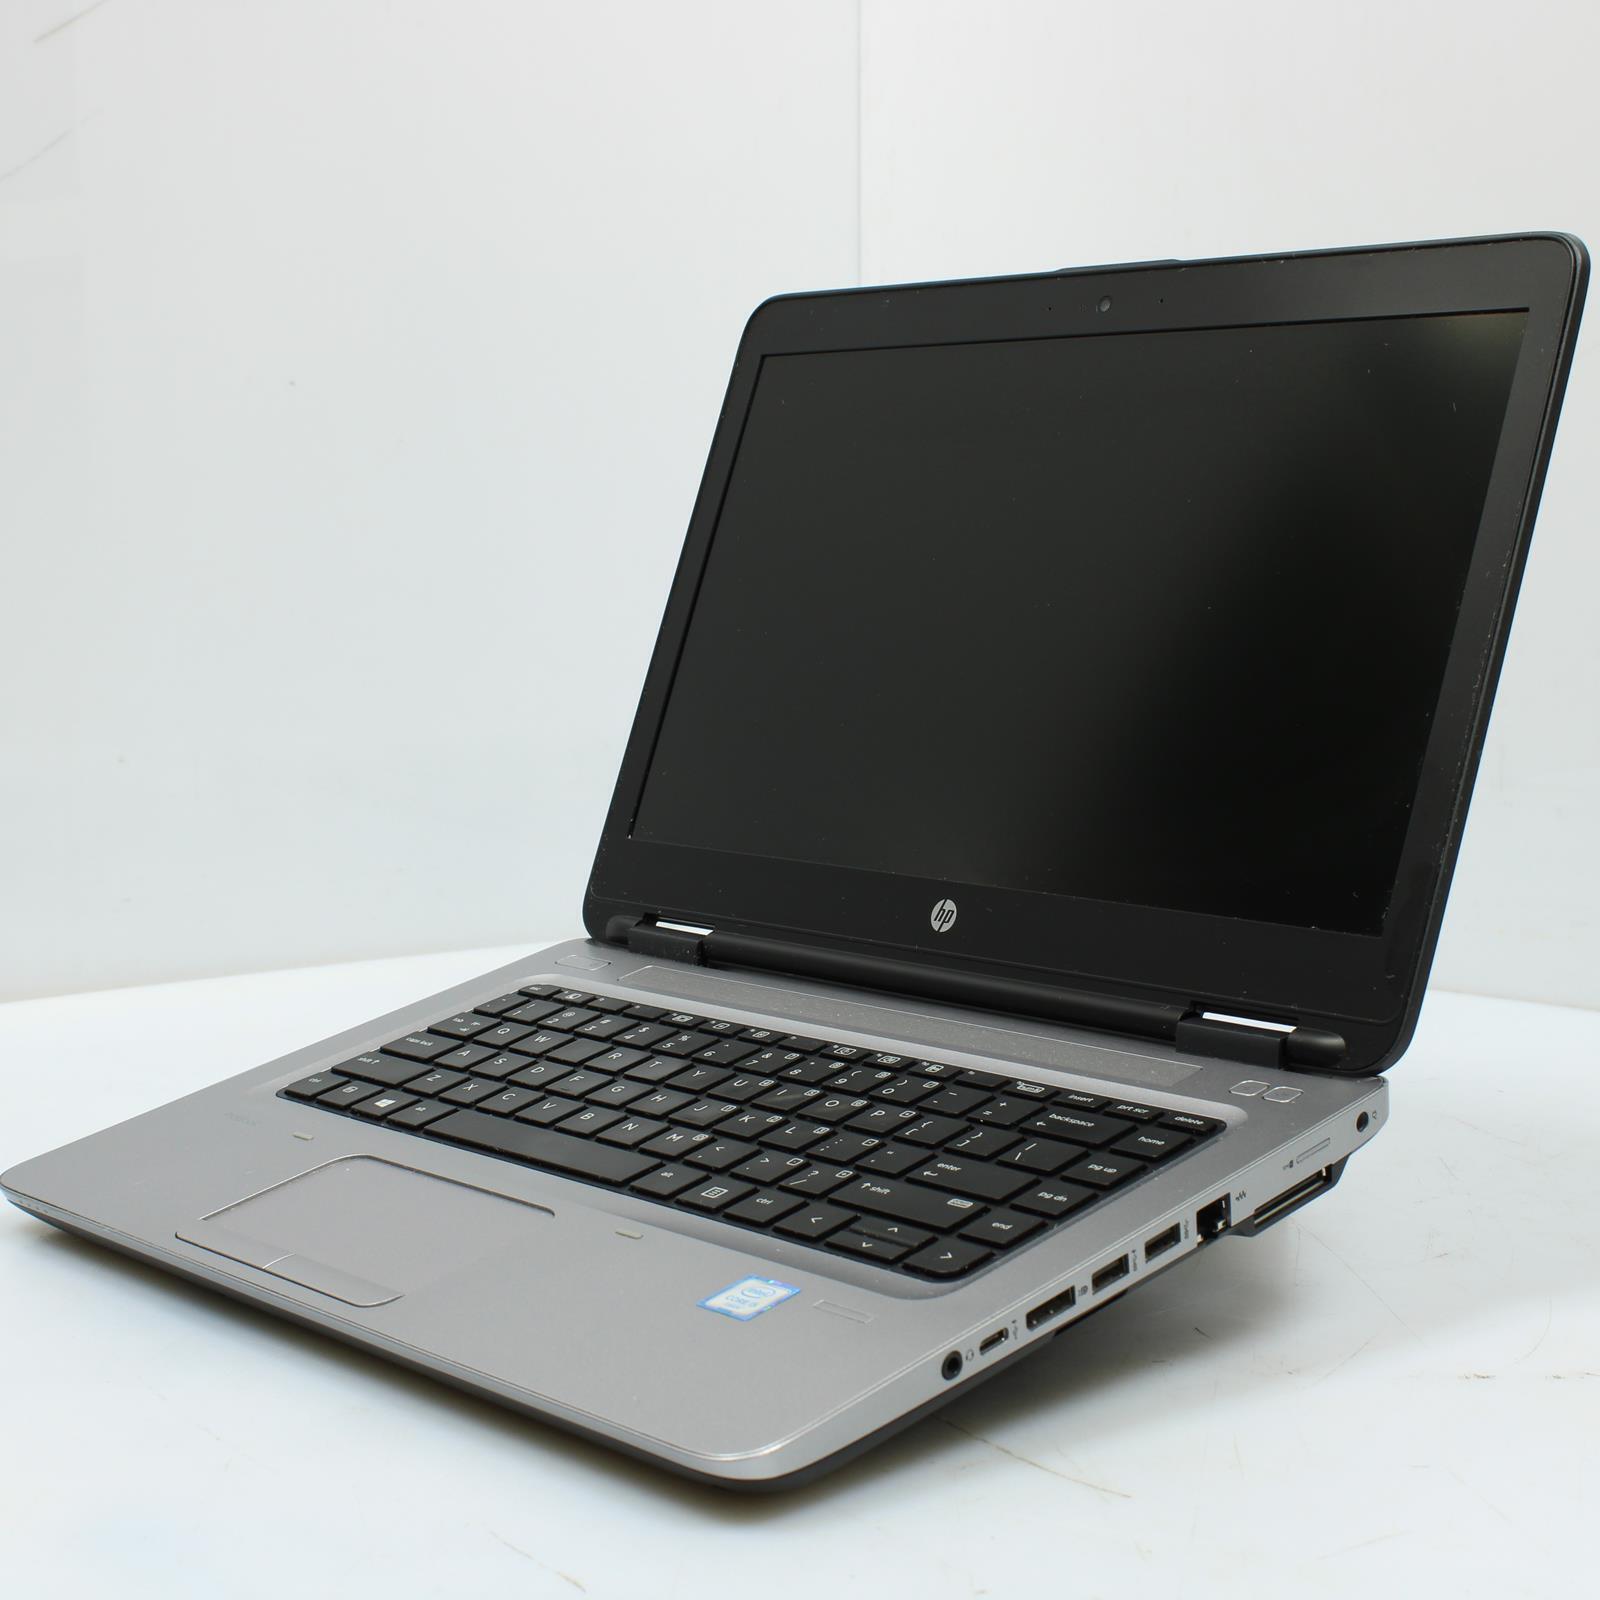 HP ProBook 640 G2 Intel Core i5 6th Gen 8GB No Drive/OS Laptop